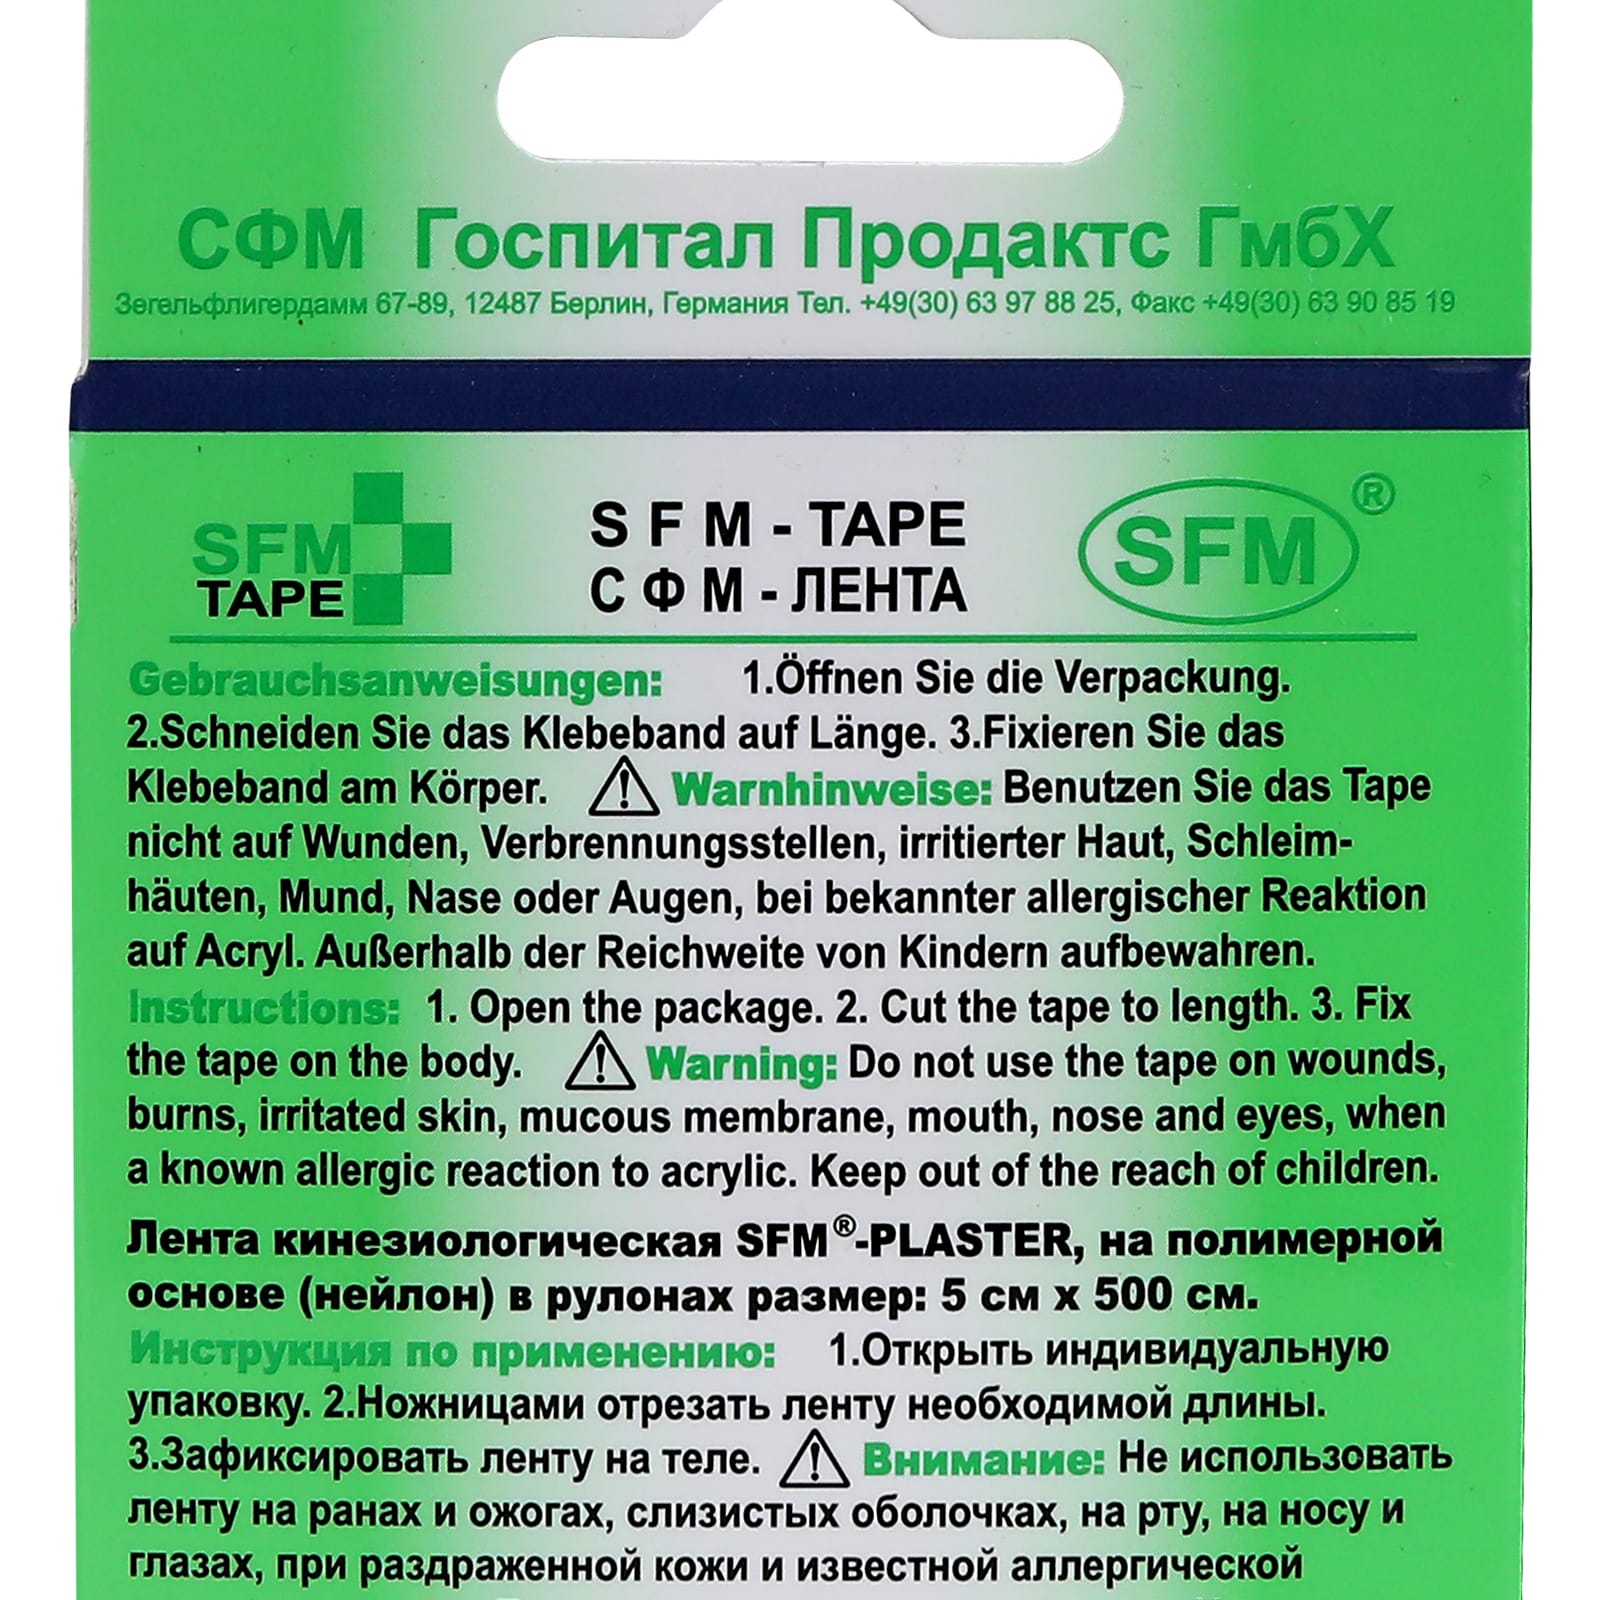 Кинезиотейп SFM Hospital Products Plaster на полимерной основе 5х500 см синего цвета в диспенсере - фото 3